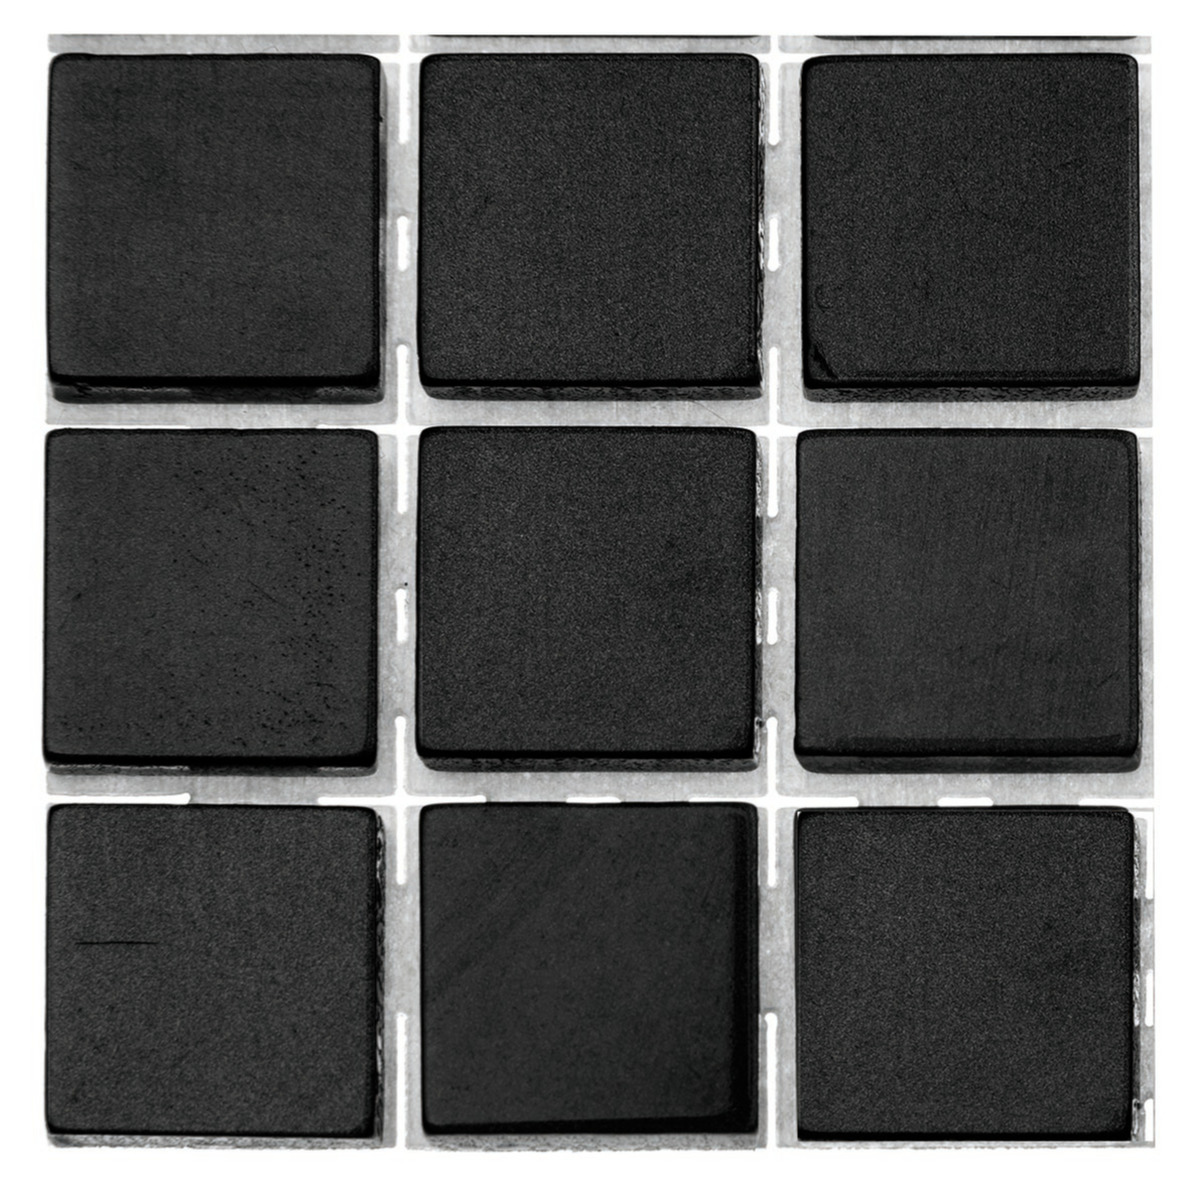 504x stuks mozaieken maken steentjes/tegels kleur zwart met formaat 10 x 10 x 2 mm